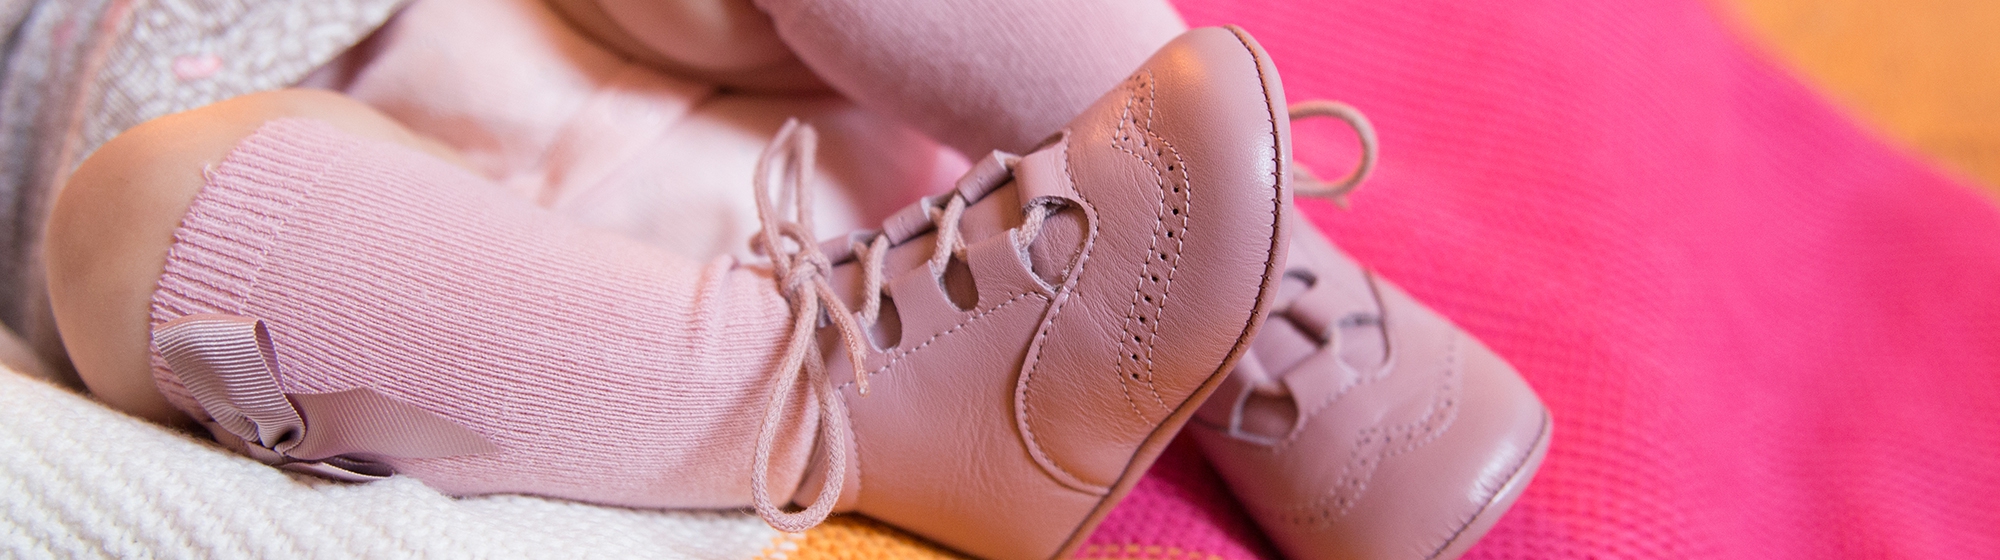 malta equipo monitor Zapato Inglés de Bebé | Inglesitos para Bebé | Pisamonas